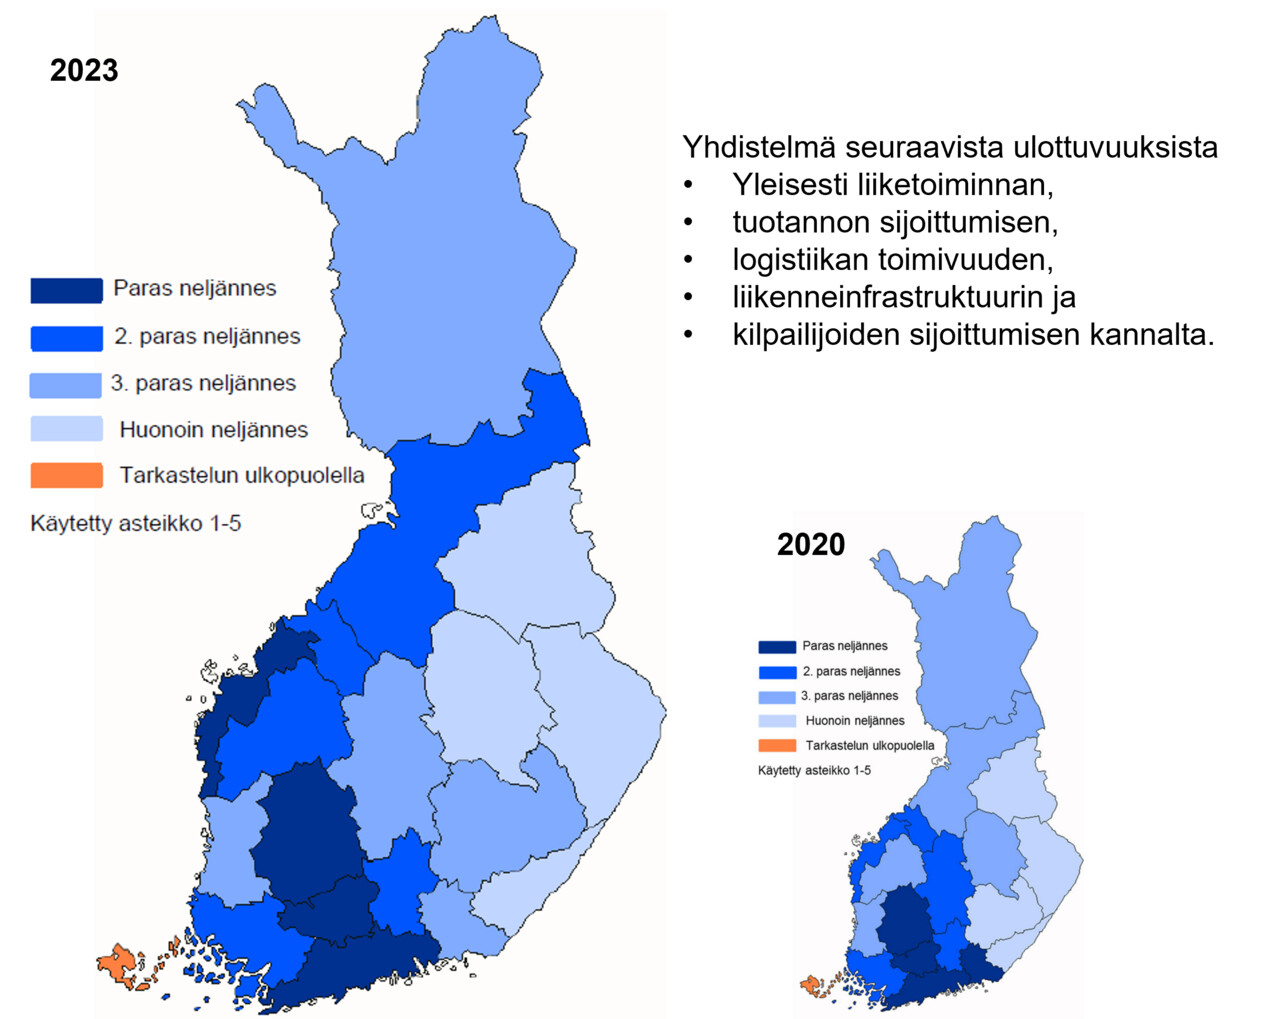 Logistiikkayritysten arvio toimintaedellytyksistä sijaintipaikkakunnallaan viiden eri ulottuvuuden yhdistelmäl-lä vuonna 2020 sekä vertailu vuoden 2020 tilanteeseen. Vuonna 2020 parhaaseen neljännekseen sijoittuvat Uudenmaan, Kanta-Hämeen, Kymenlaakson ja Pirkanmaan maakunnat. Huonoimpaan neljännekseen kuuluvat Kainuun, Pohjois- ja Etelä-Karjalan sekä Pohjois-Savon maakunnat.